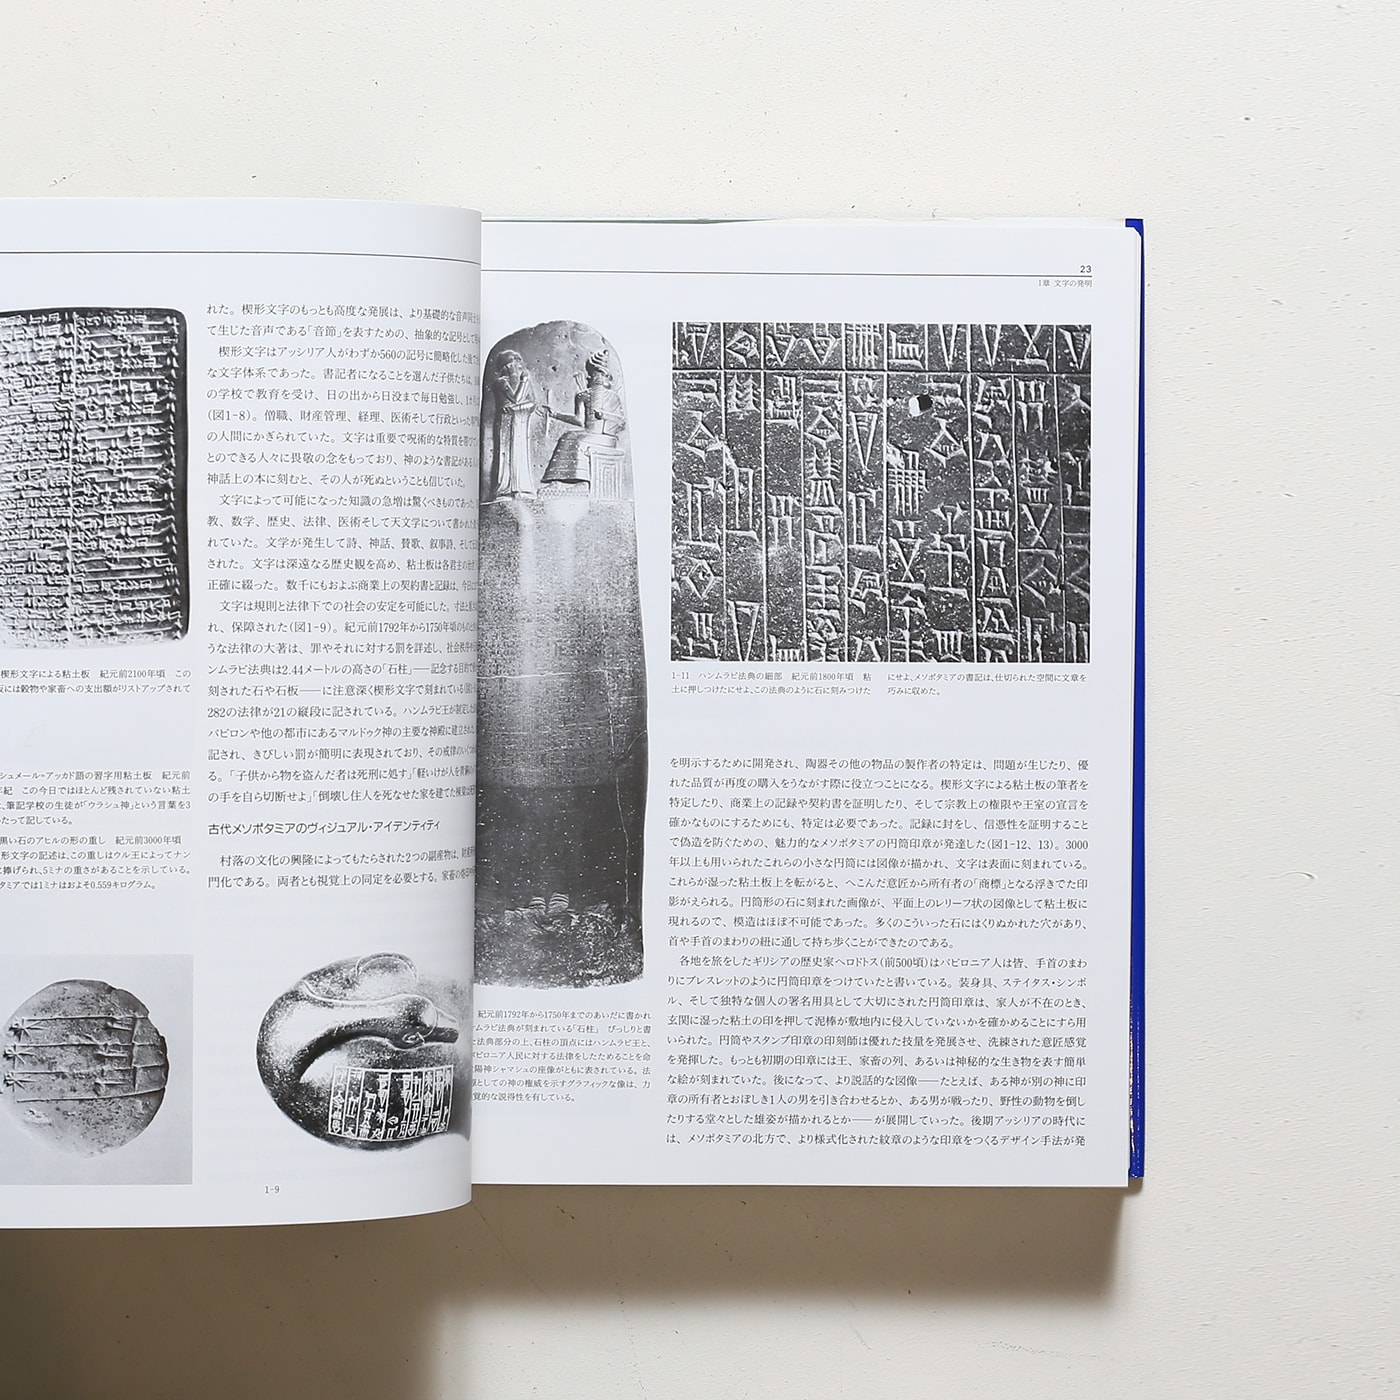 グラフィックデザイン全史 | フィリップ B.メッグズ | nostos books 